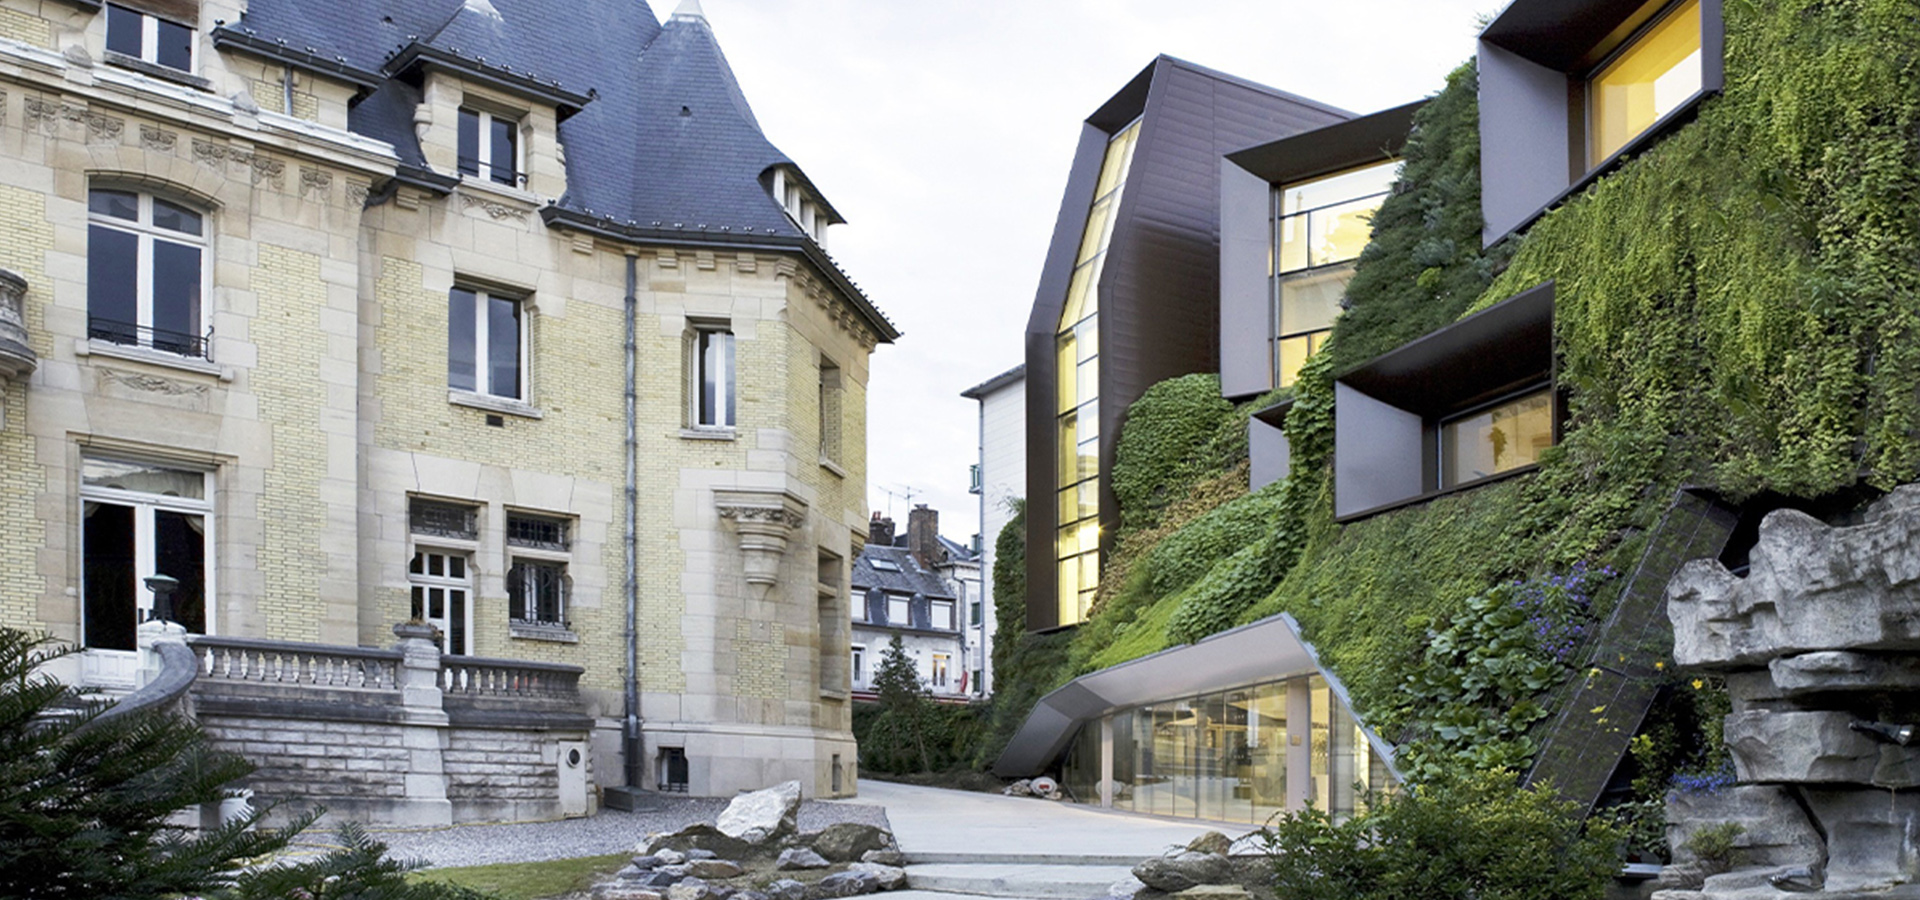 Hôtel Buctôt Vagniez - Lille - Energypro Bureau d'études thermique Paris et France pour les architectes - Energie